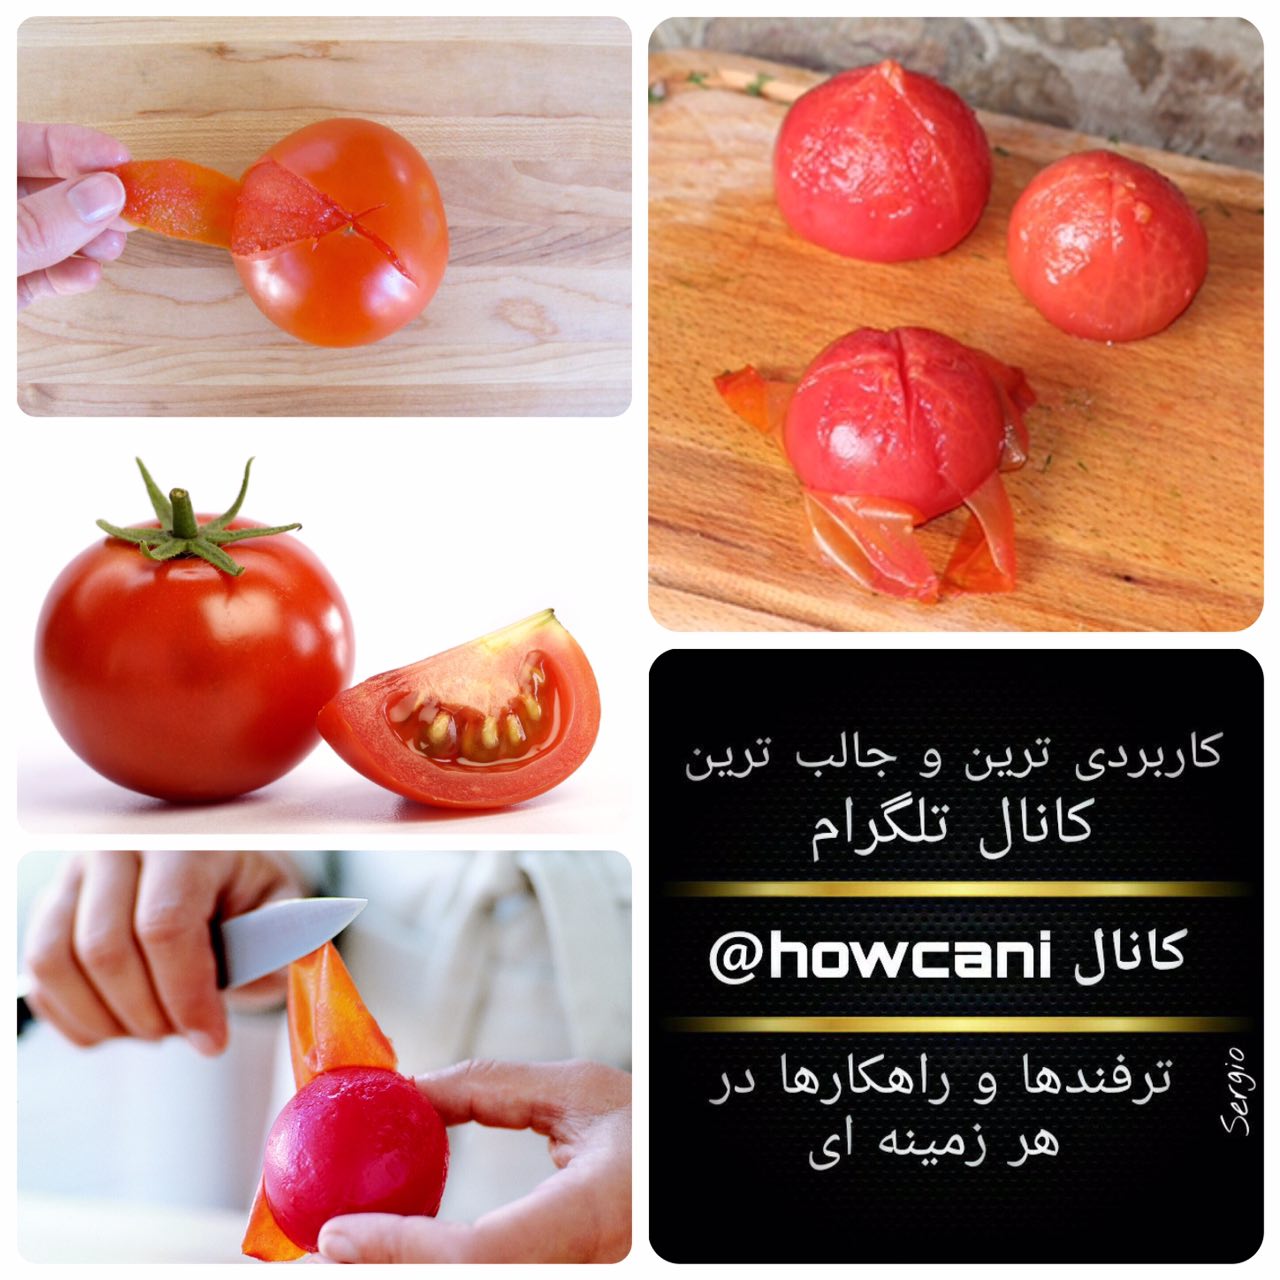 چگونه ميتوانيد به راحت پوست گوجه فرنگي را بگيريد؟🤔